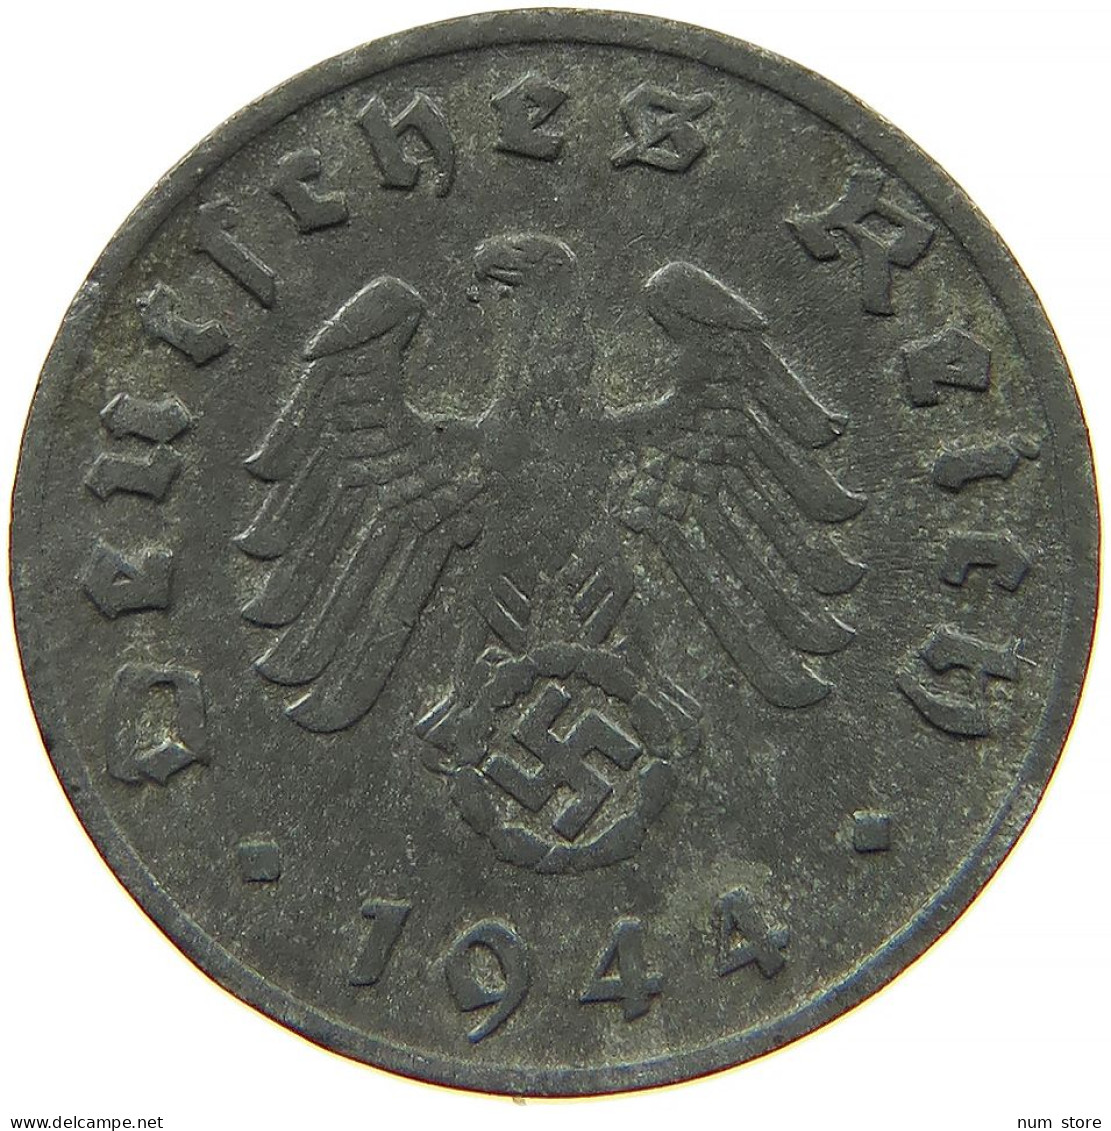 GERMANY 1 REICHSPFENNIG 1944 D #s091 1145 - 1 Reichspfennig